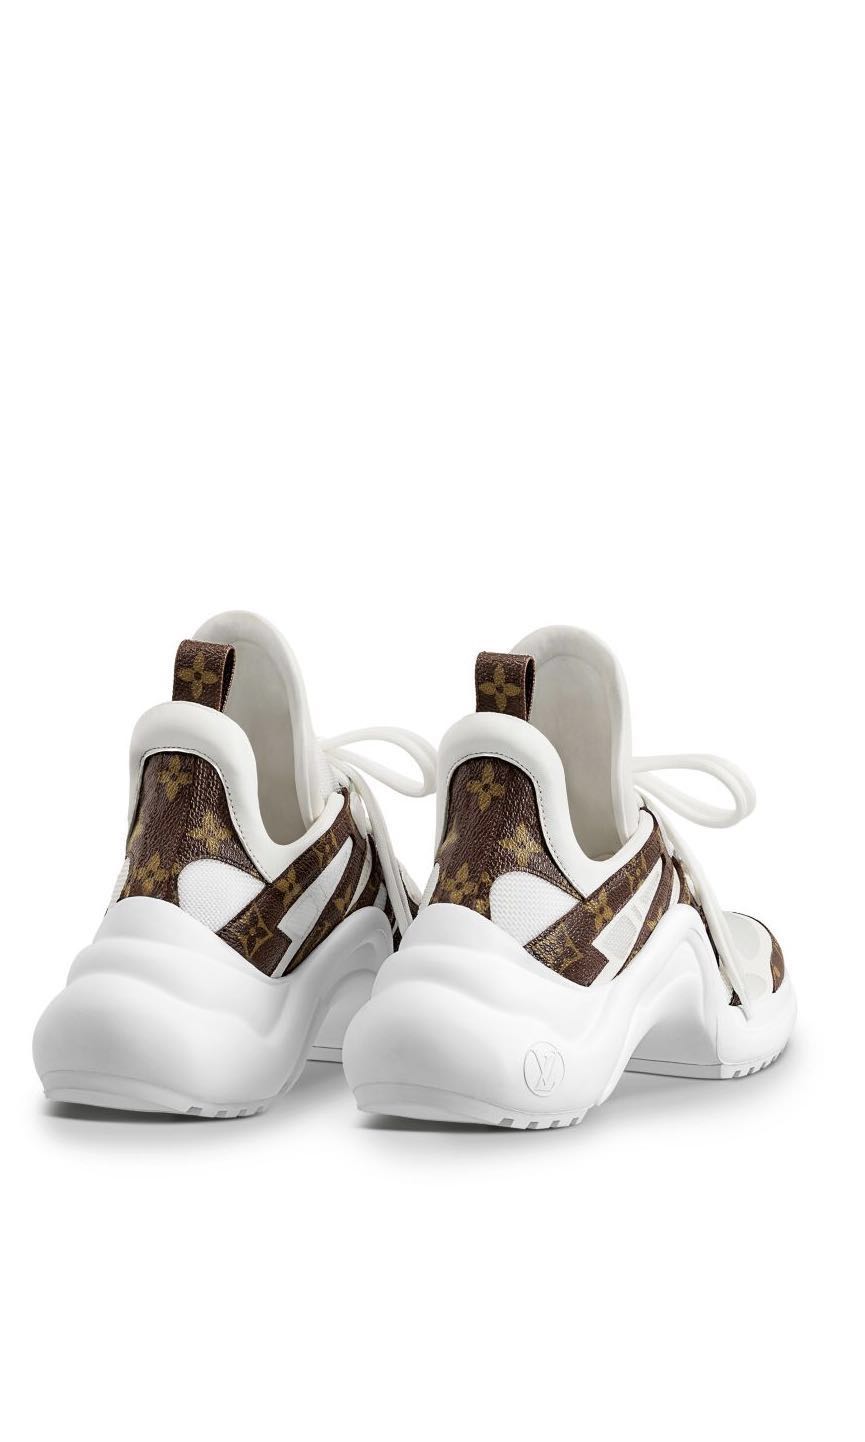 LV Archlight Sneaker - Schuhe 1A43L1